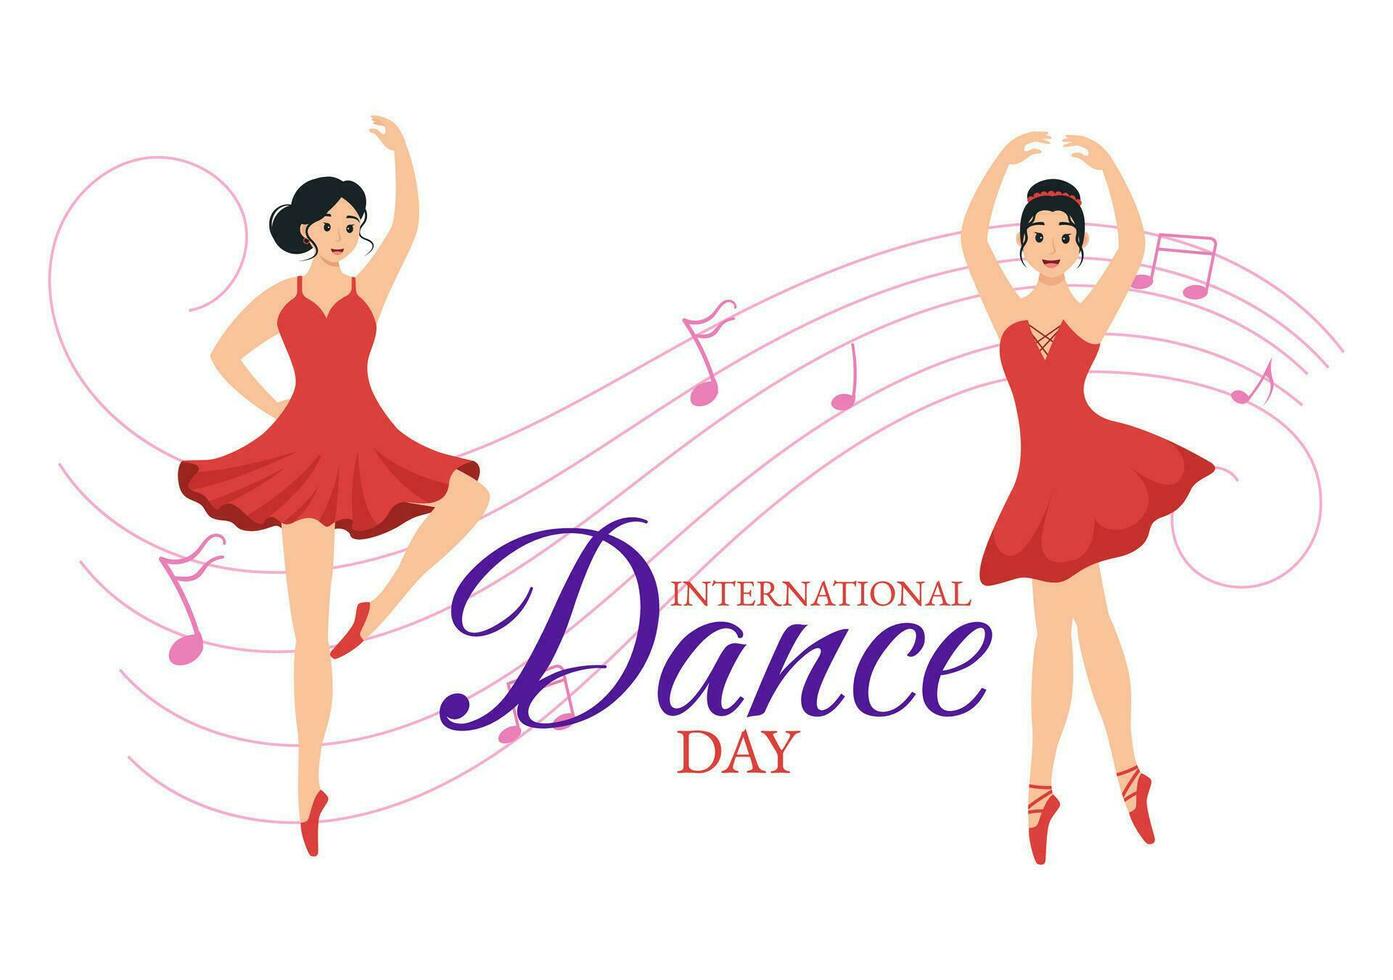 International tanzen Tag Vektor Illustration auf 29 April mit Fachmann Tanzen durchführen Paar oder Single beim Bühne im eben Karikatur Hintergrund